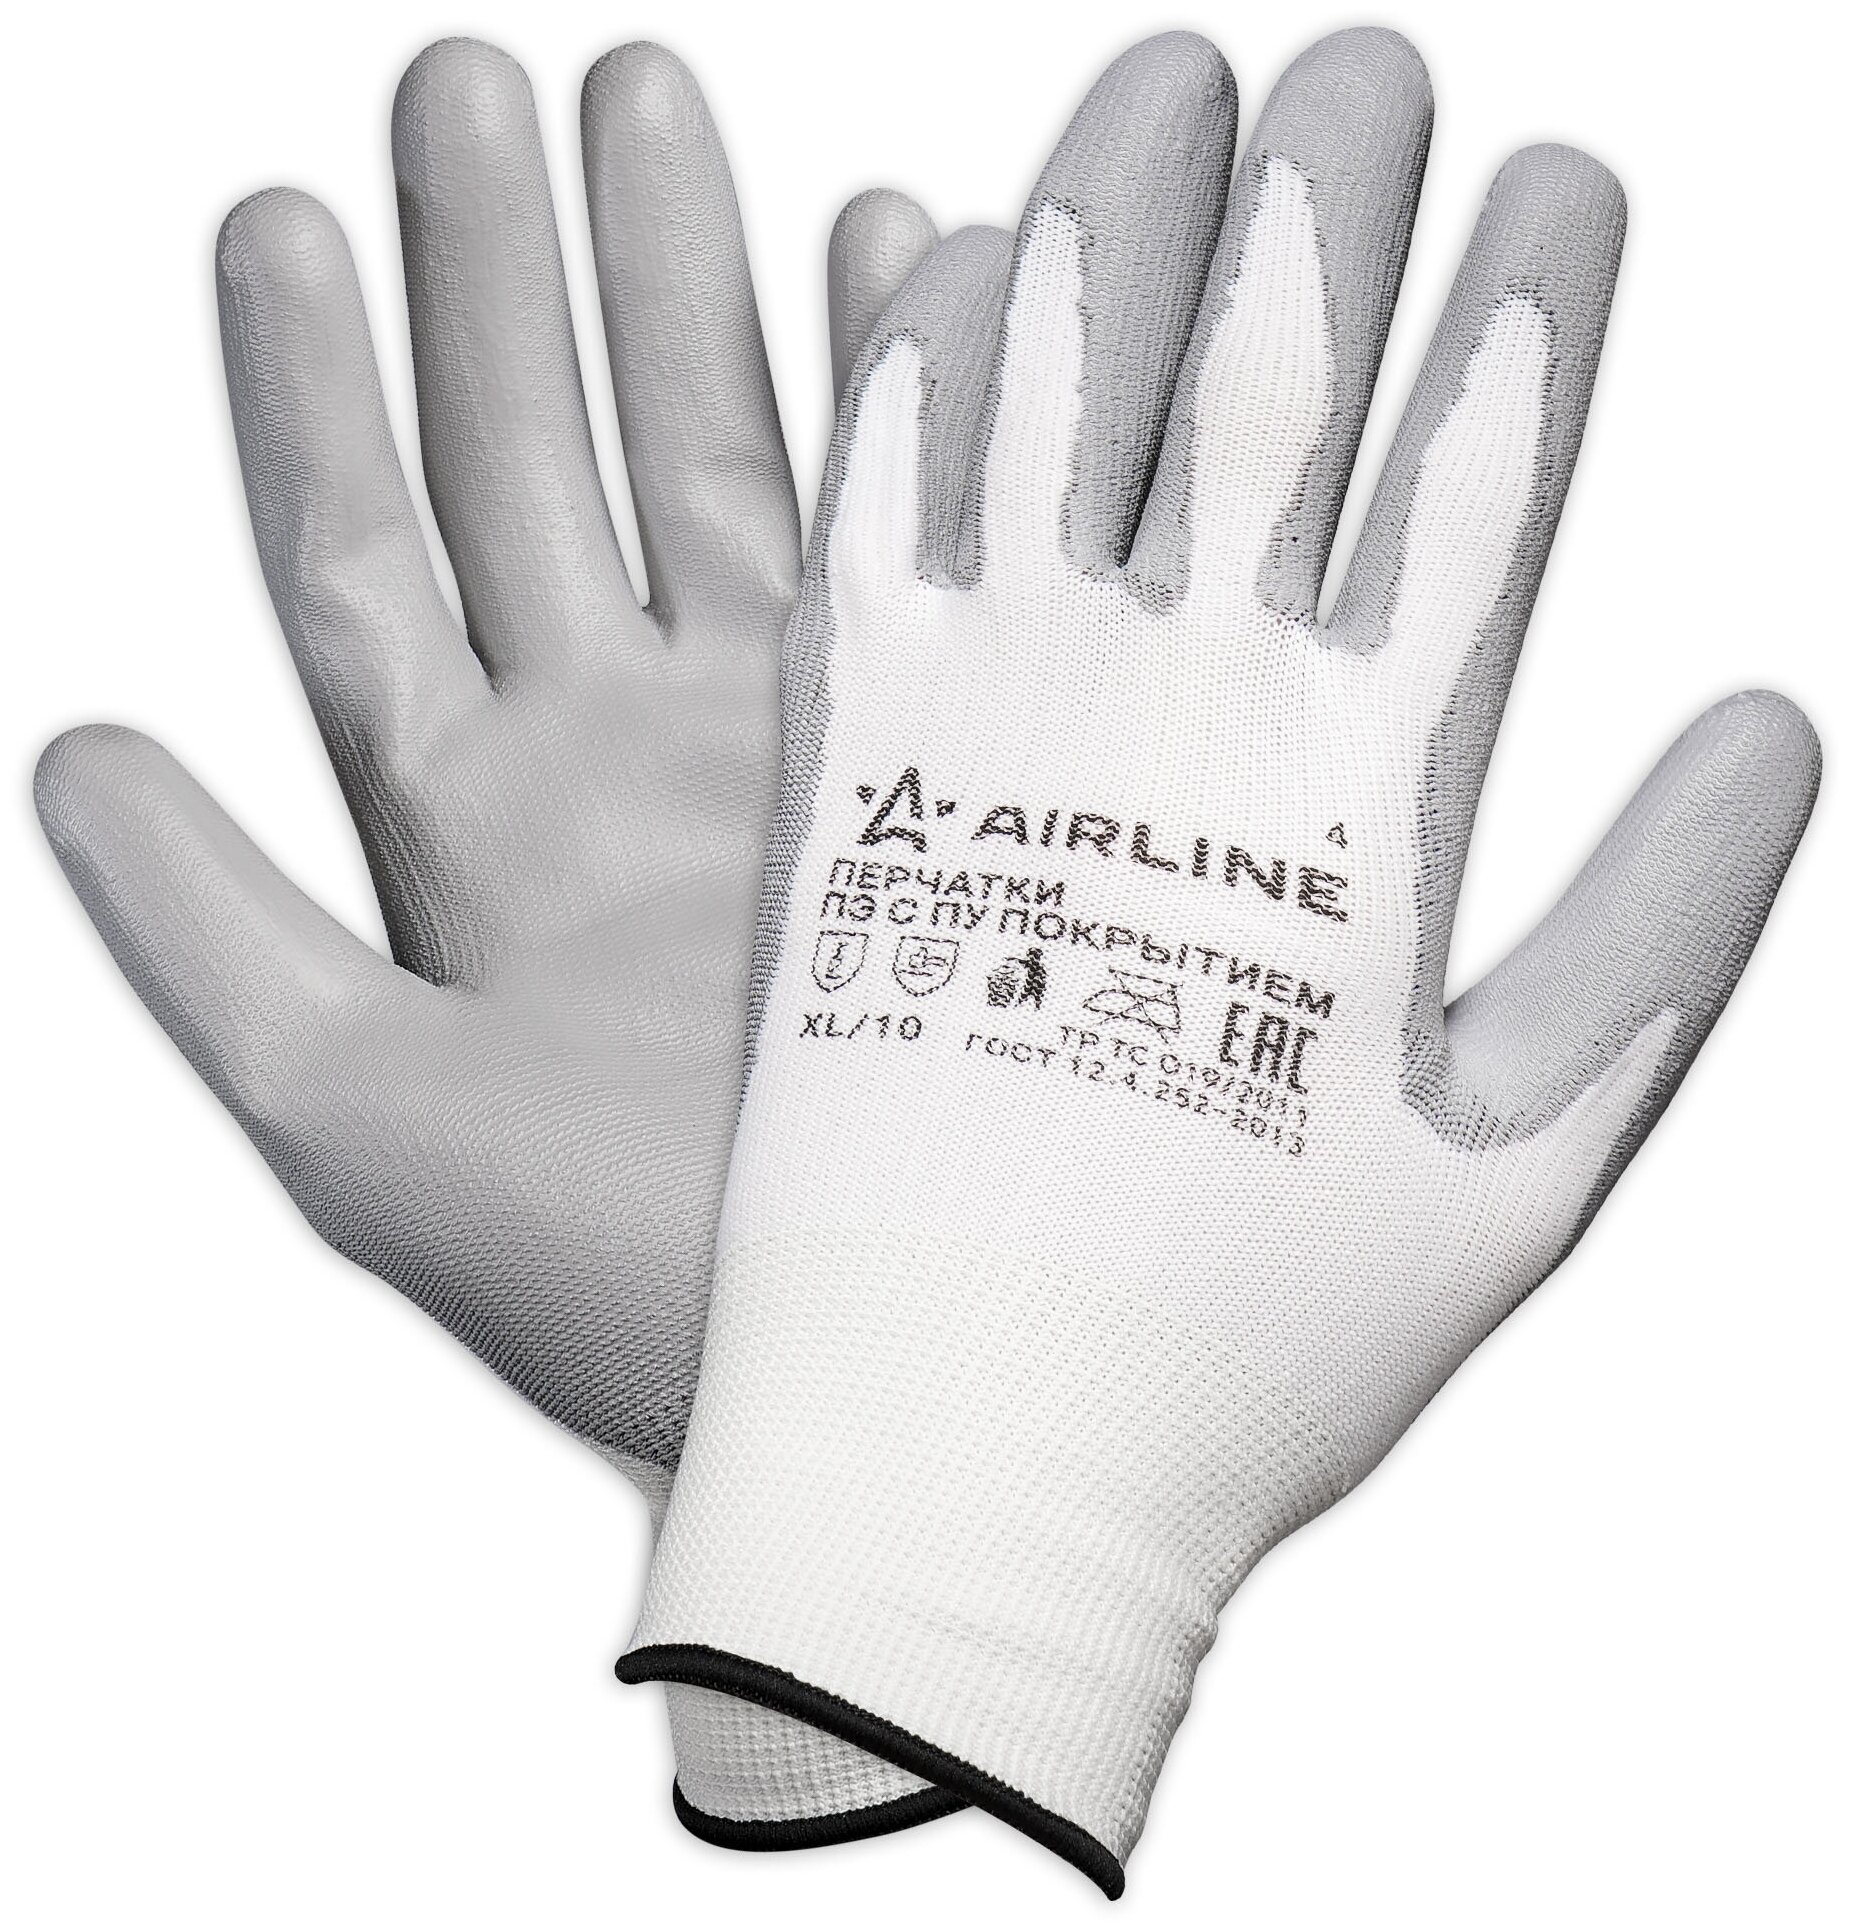 Перчатки полиэфирные с цельным ПУ покрытием ладони (XL) бел./сер. ADWG001 AIRLINE